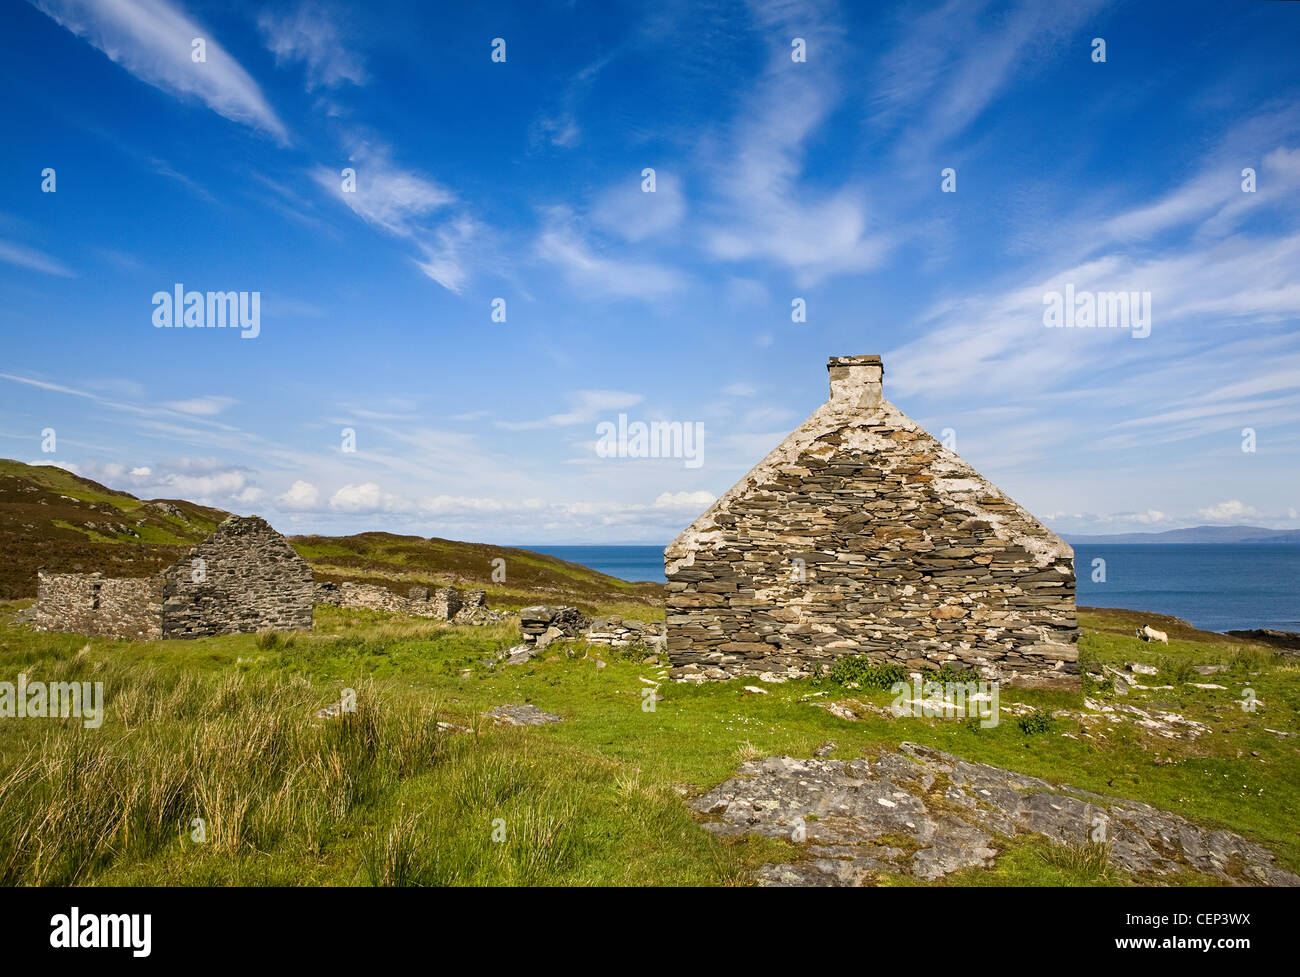 Le village abandonné de Riasg Buidhe sur la côte Est de l'Ecosse Argyll Colonsay, Colonsay Banque D'Images